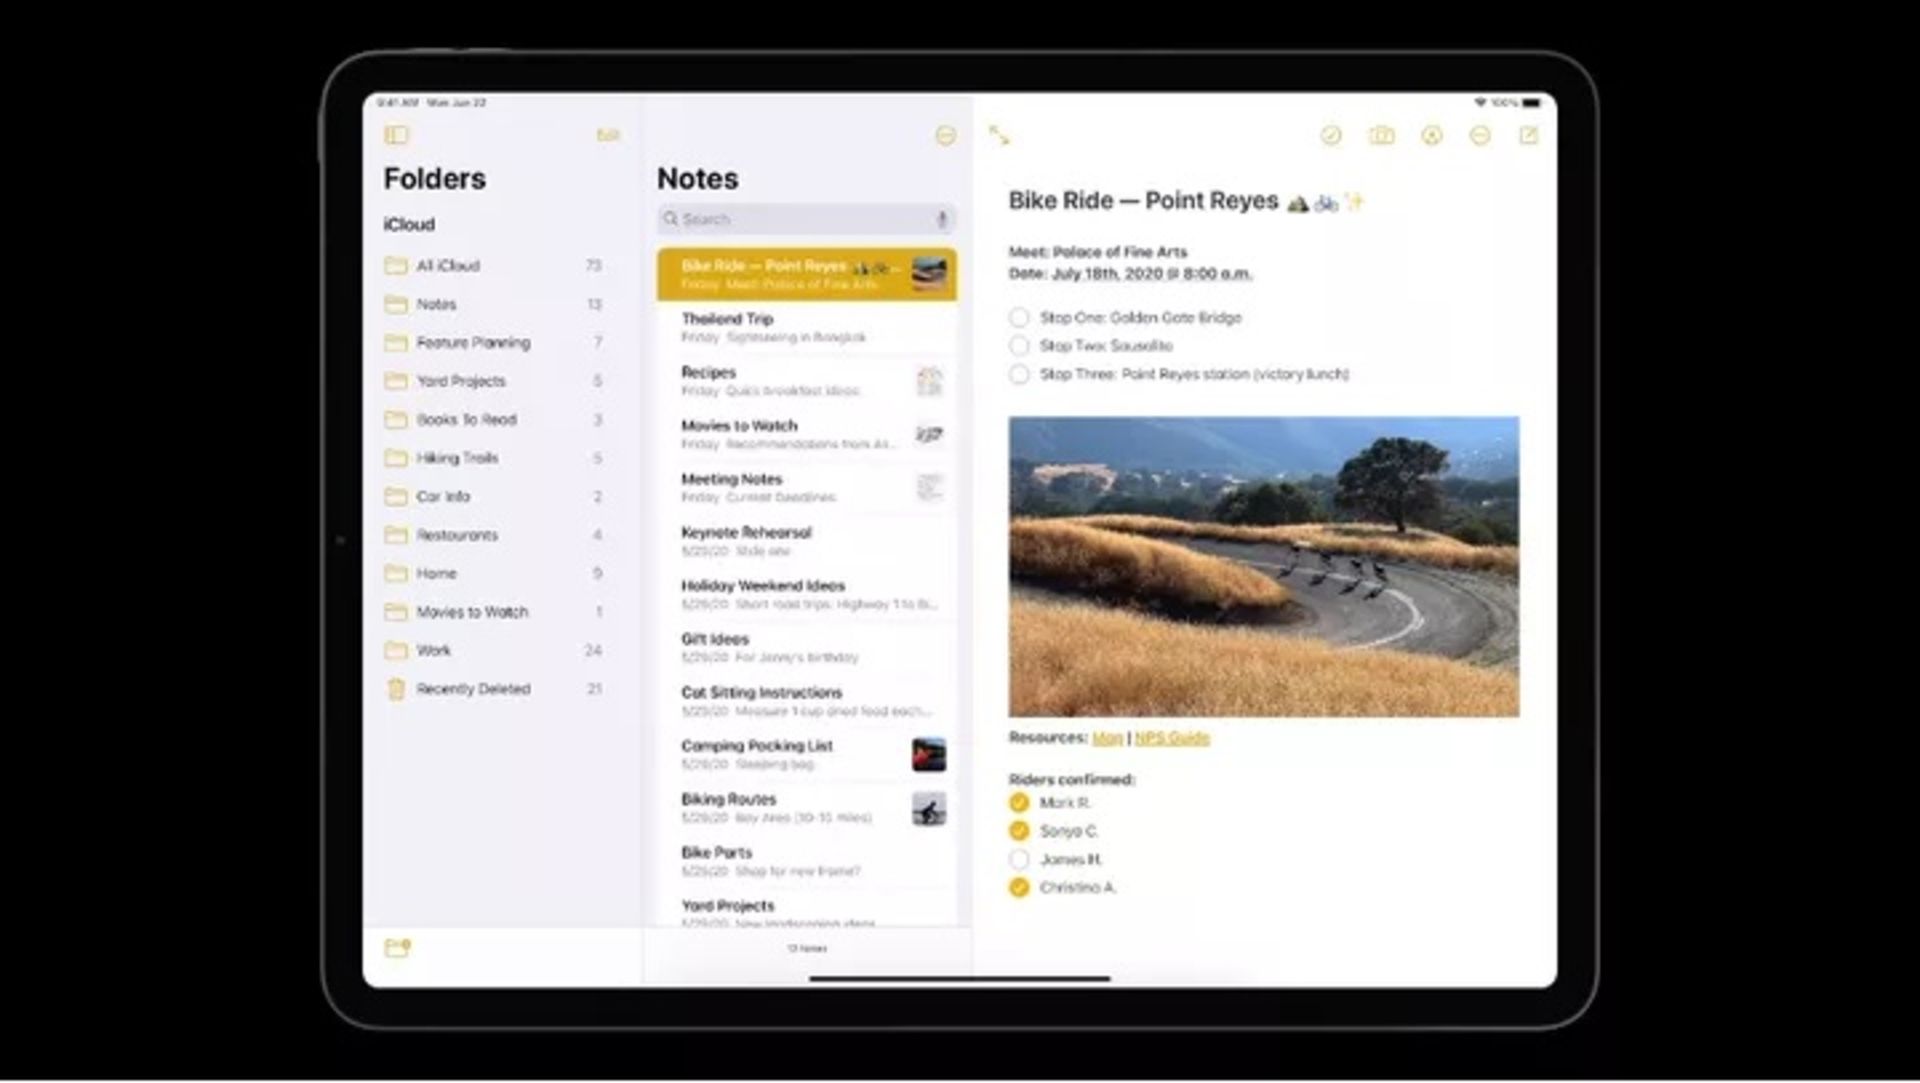 مرجع متخصصين ايران اپليكيشن نوت در آپيد / iPadOS Notes App